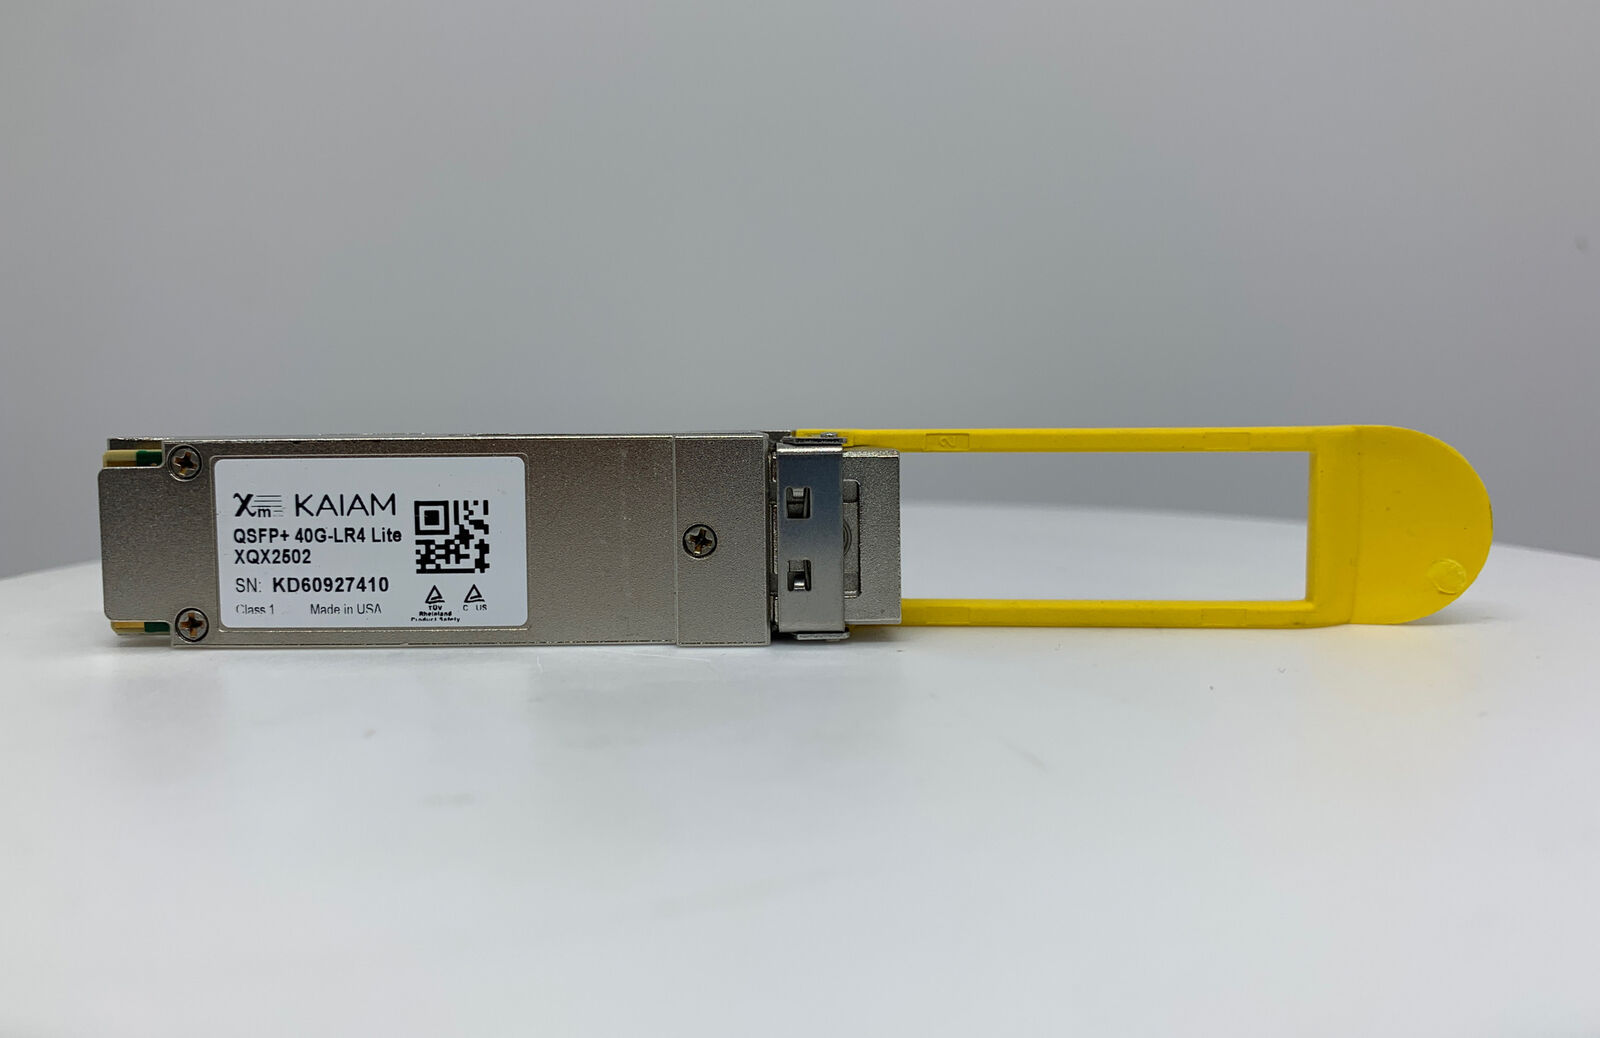 XQX2502 KAIAM QSFP+40G-LR4 Lite OPTICAL MODULE NEW PULLS 